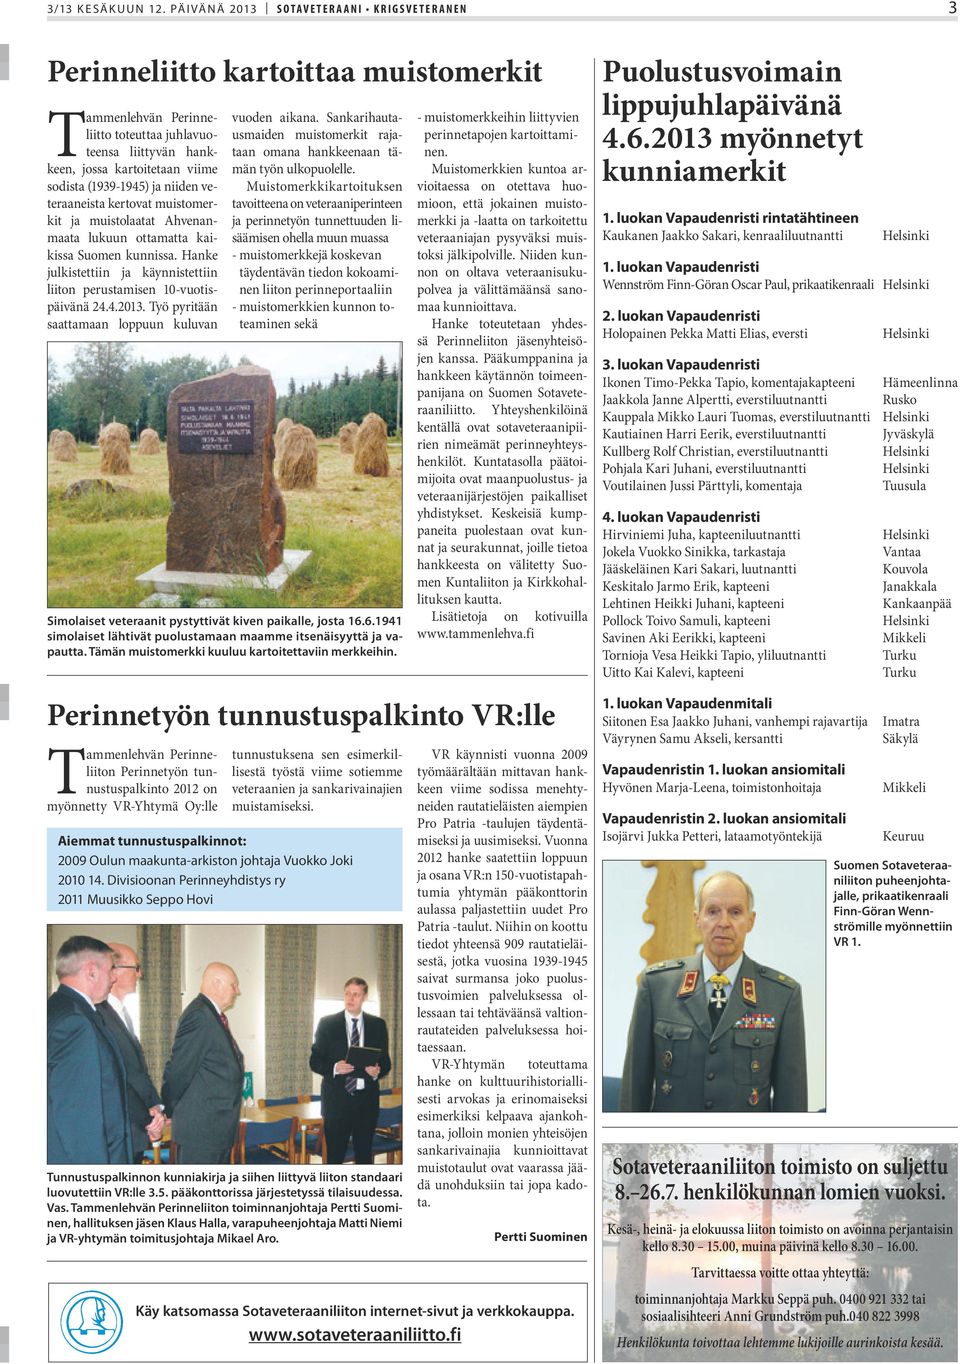 ja niiden veteraaneista kertovat muistomerkit ja muistolaatat Ahvenanmaata lukuun ottamatta kaikissa Suomen kunnissa. Hanke julkistettiin ja käynnistettiin liiton perustamisen 10-vuotispäivänä 24.